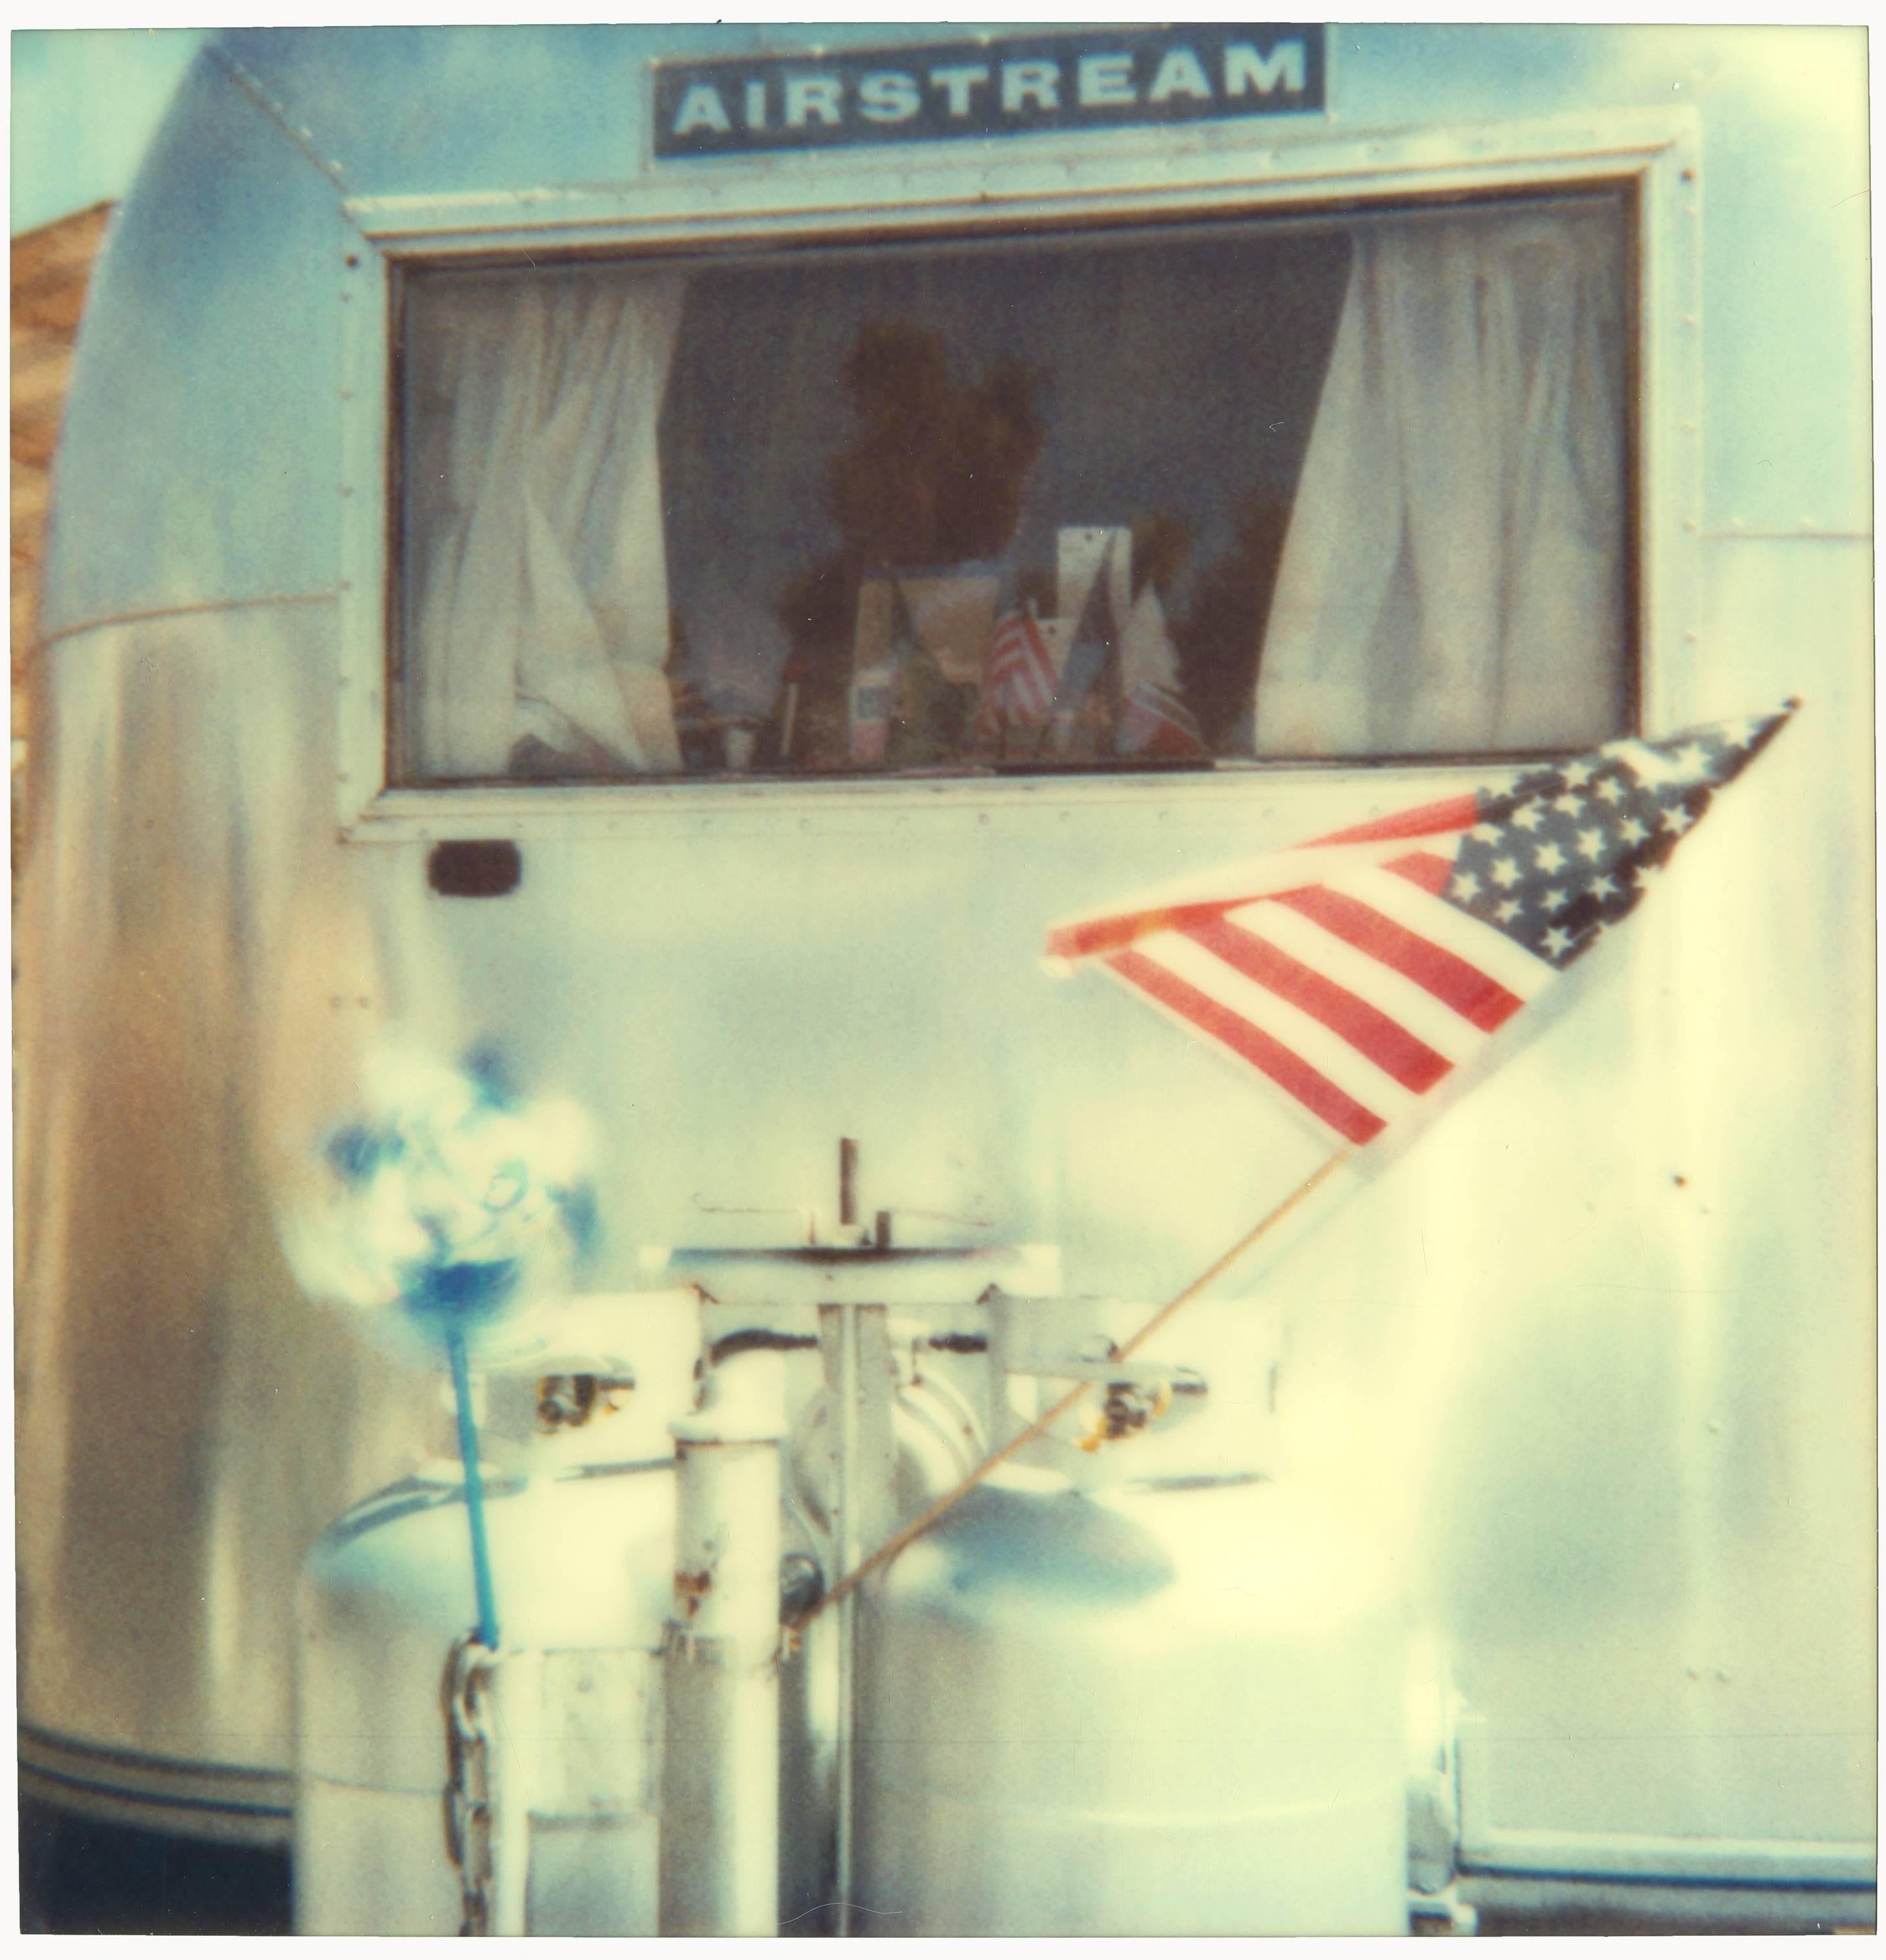 Stefanie Schneider Color Photograph - Airstream (29 Palms, CA) 20x20cm - Polaroid, Contemporary, 20th Century, Color